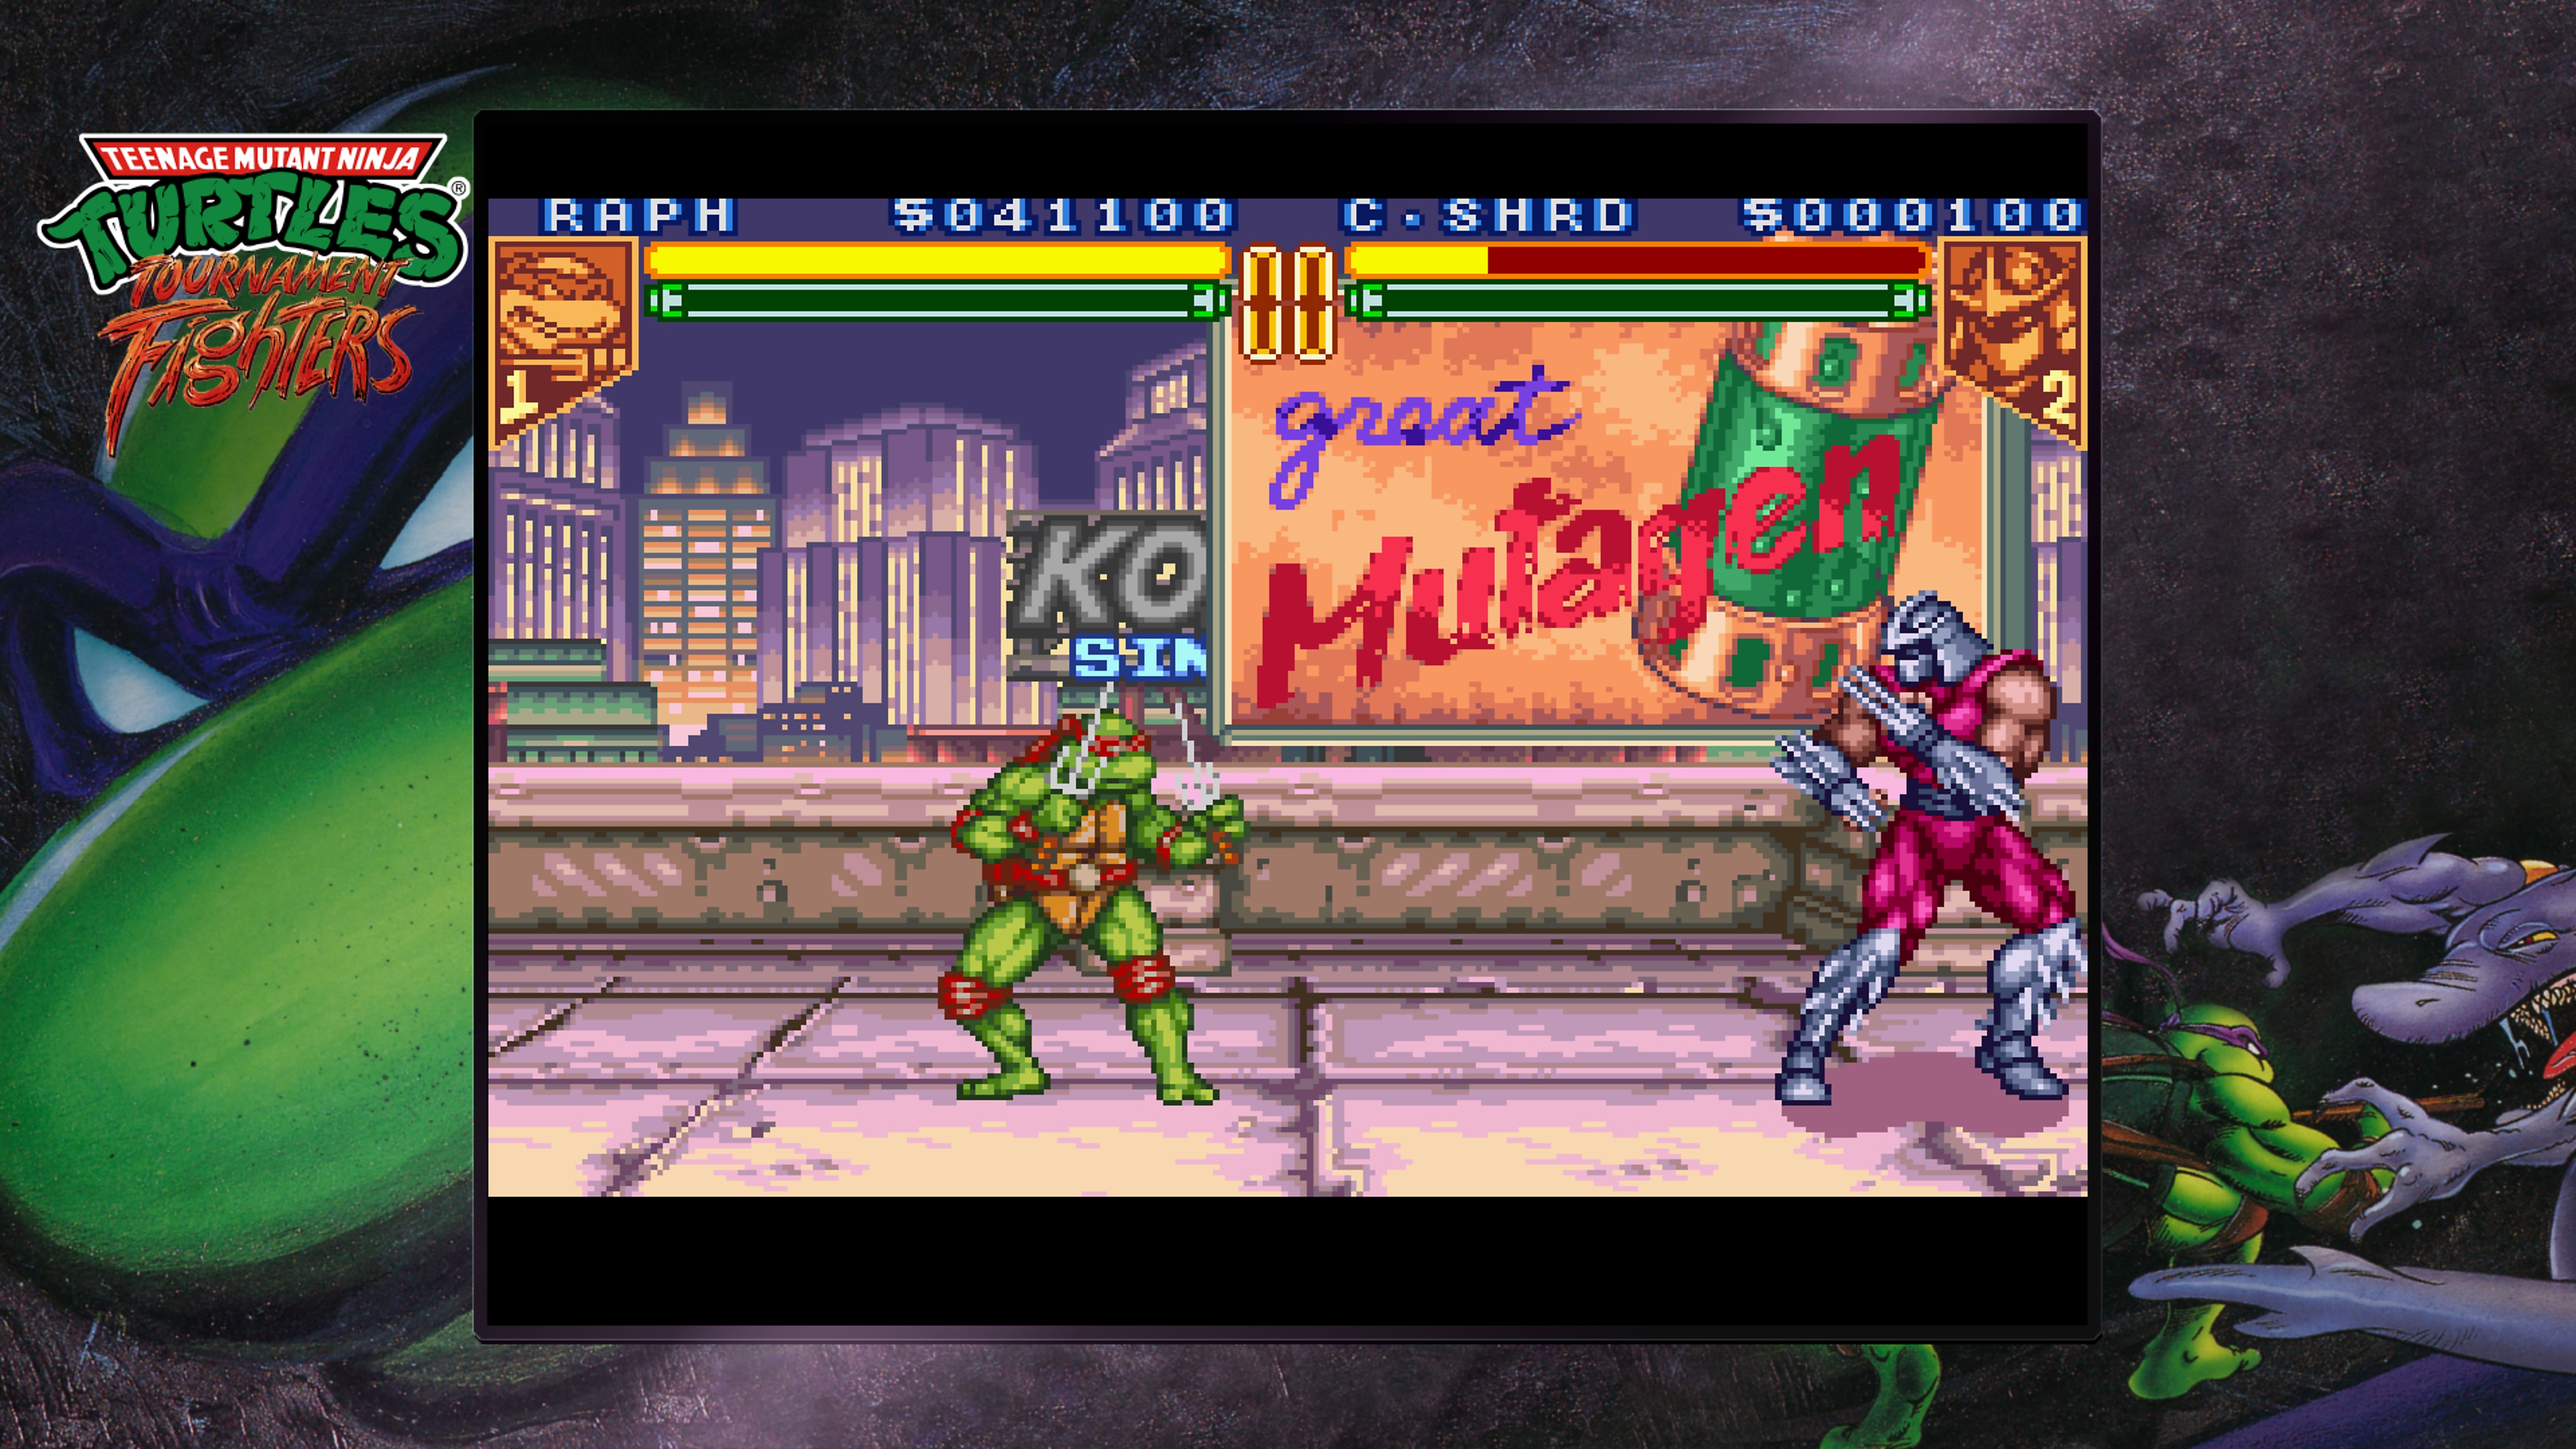 Teenage Mutant Ninja Turtles Collection - Capture d'écran de Tournament Fighters opposant Raphaël à Shredder sur les toits